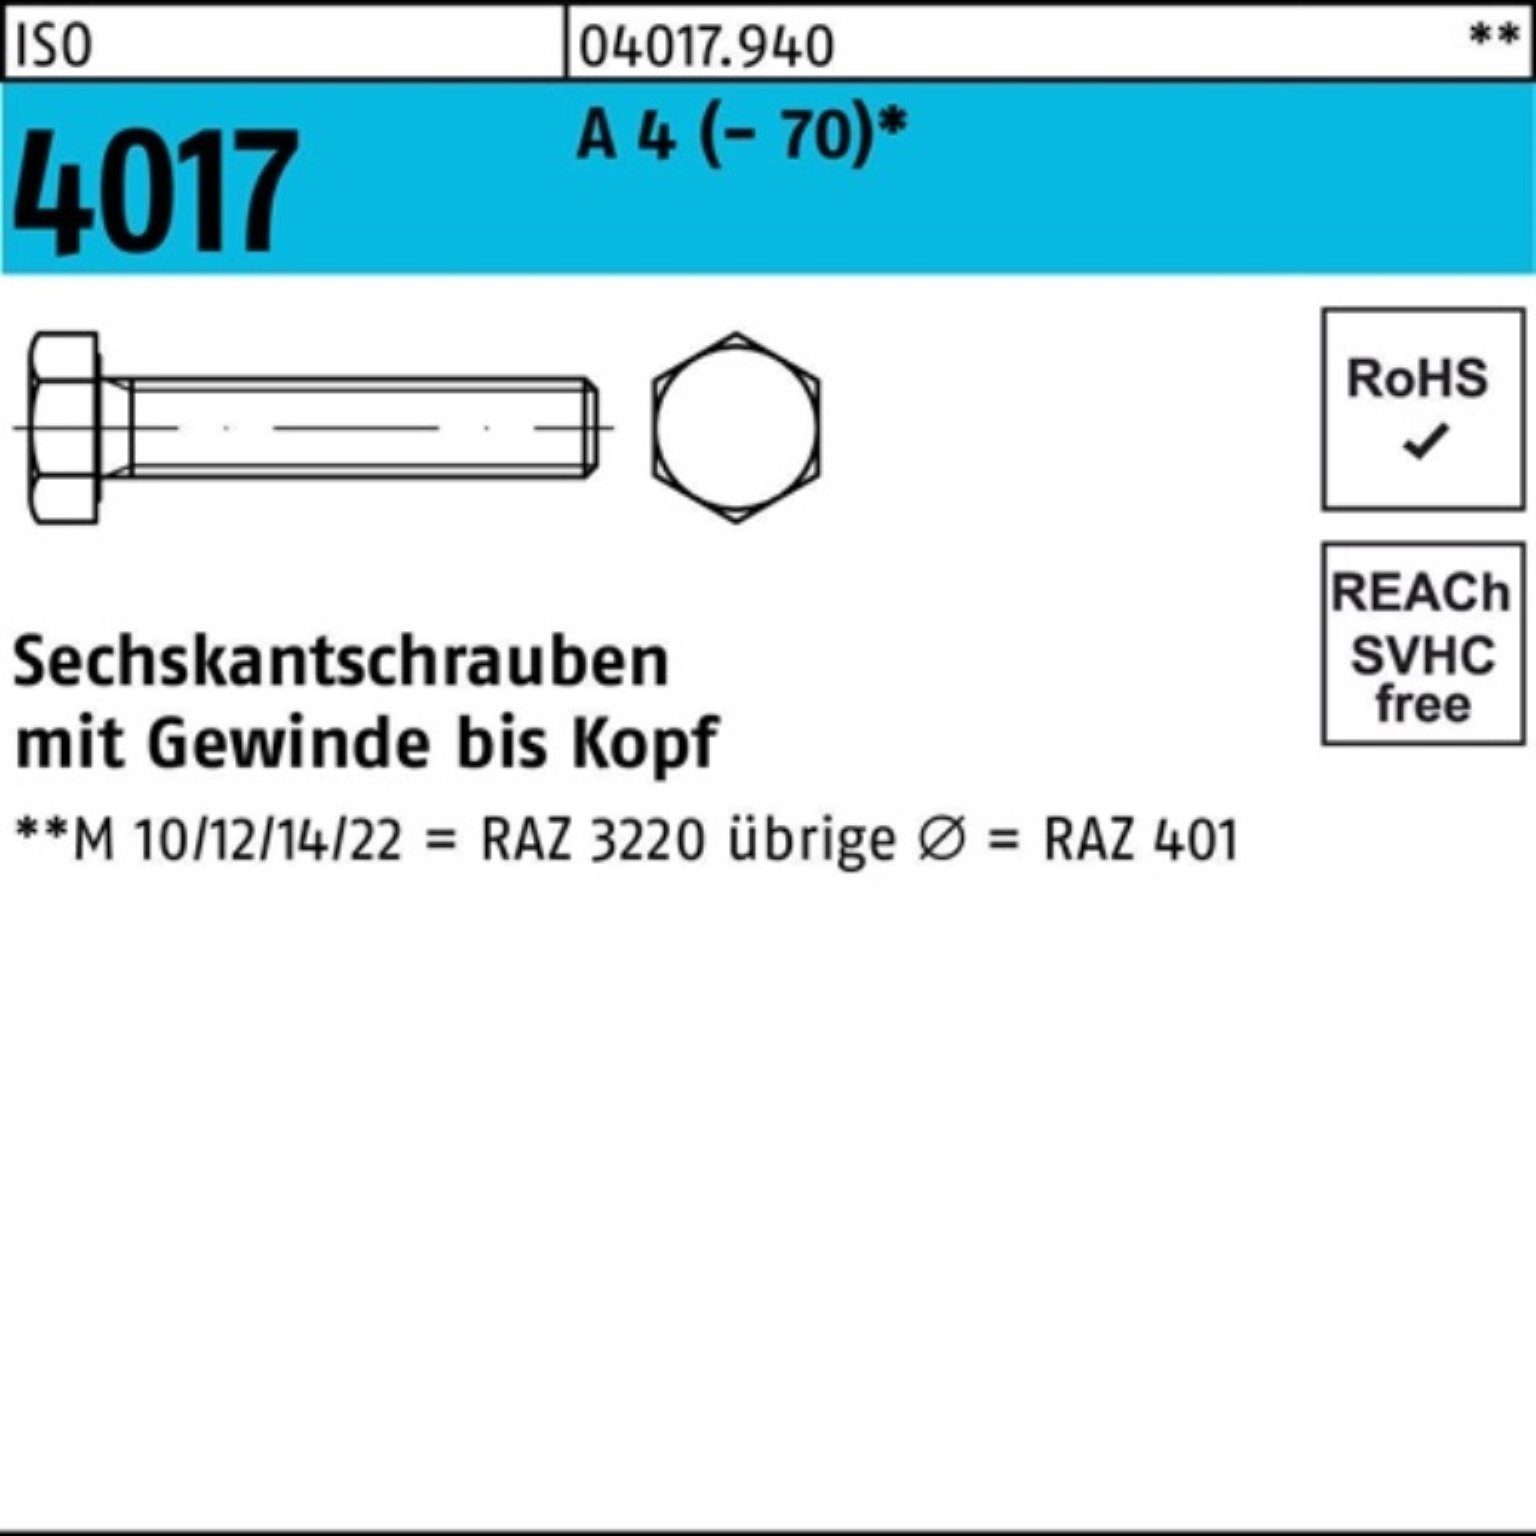 Bufab Sechskantschraube 100er Pack Sechskantschraube ISO 4017 VG M16x 110 A 4 (70) 1 Stück